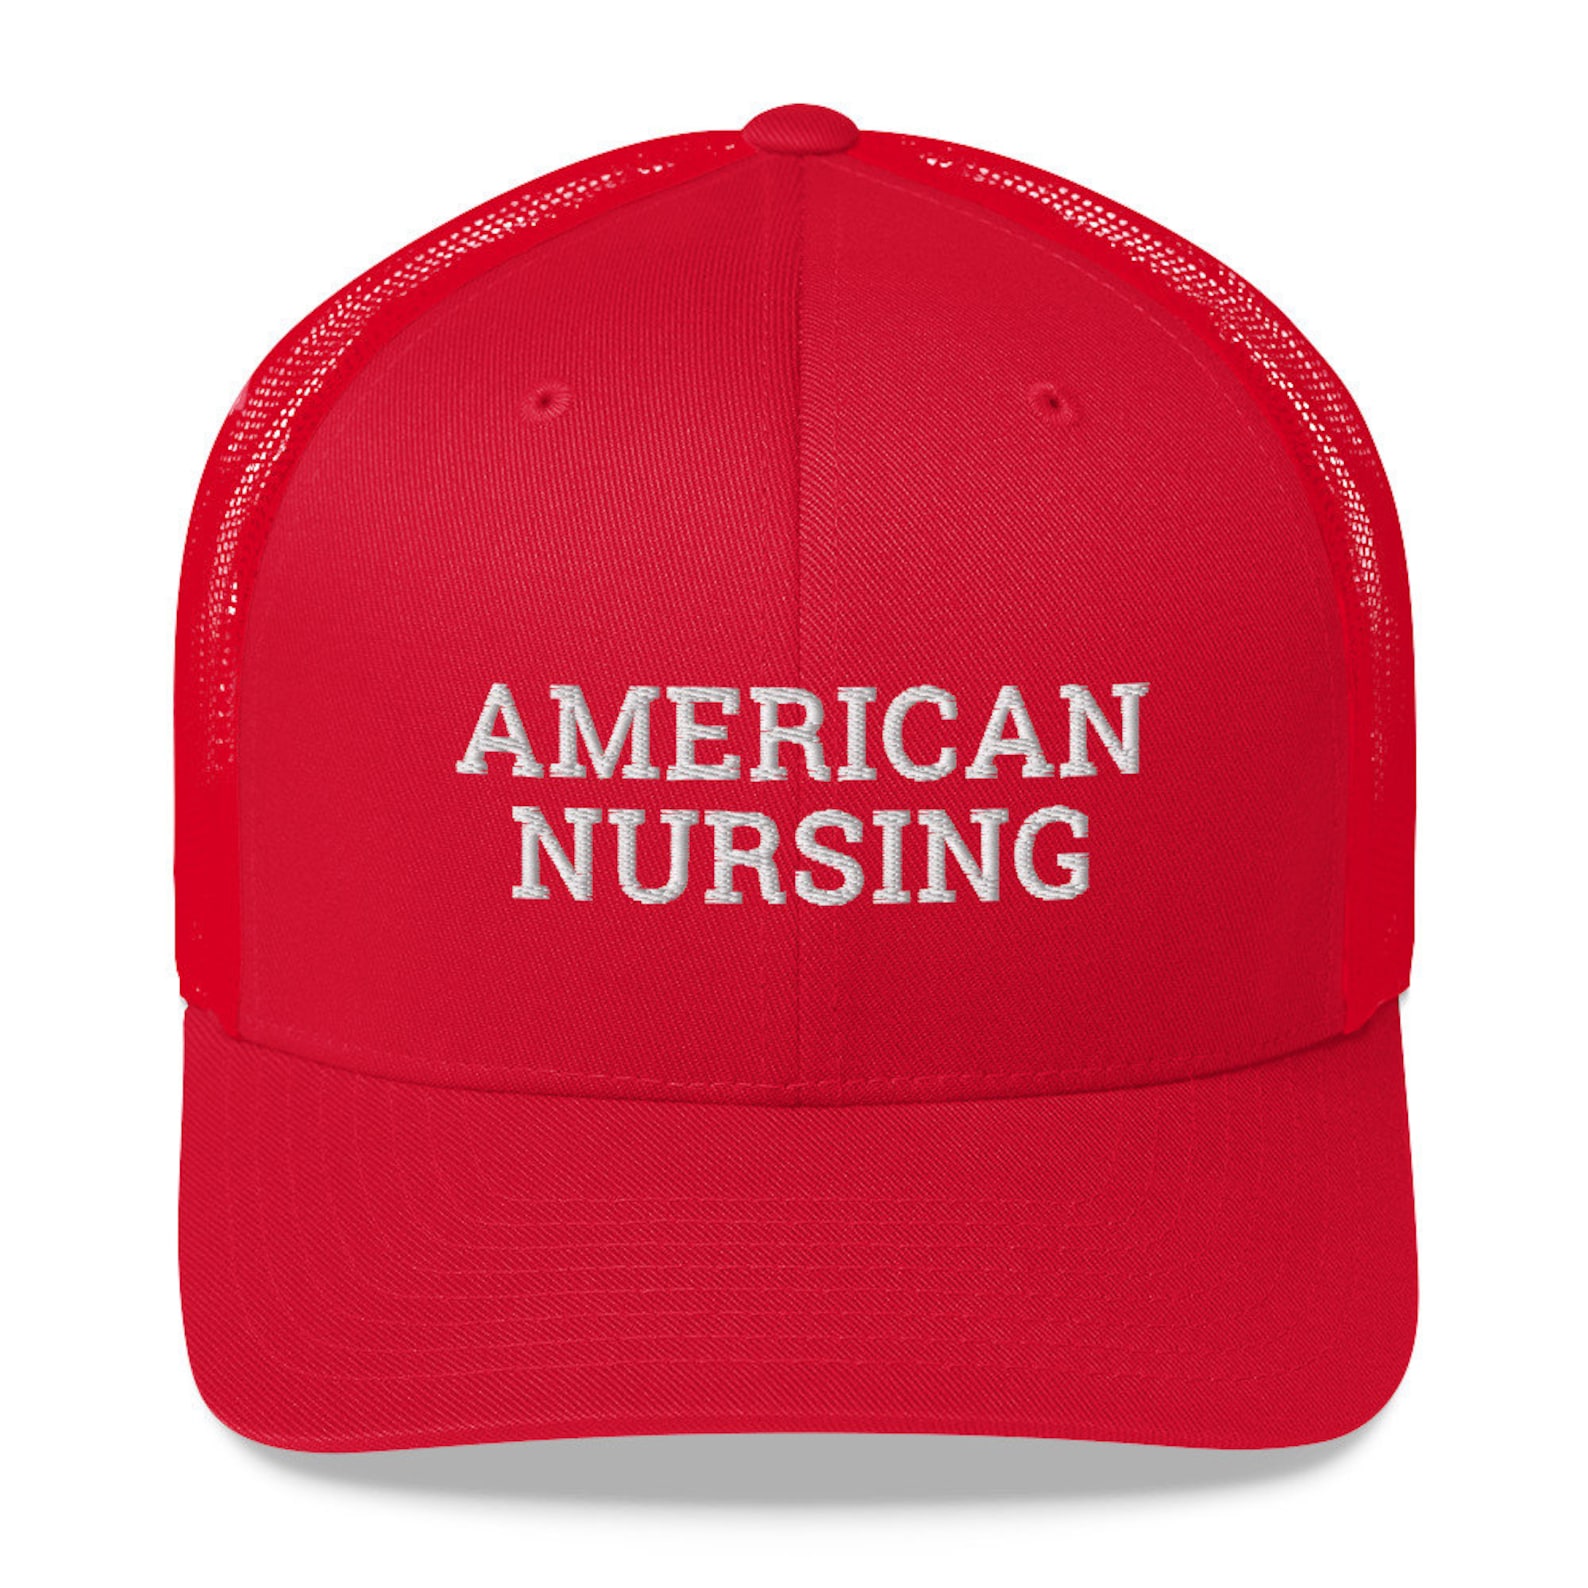 American Nursing hat / Labor Day hat / Nursing Trucker Cap | Etsy